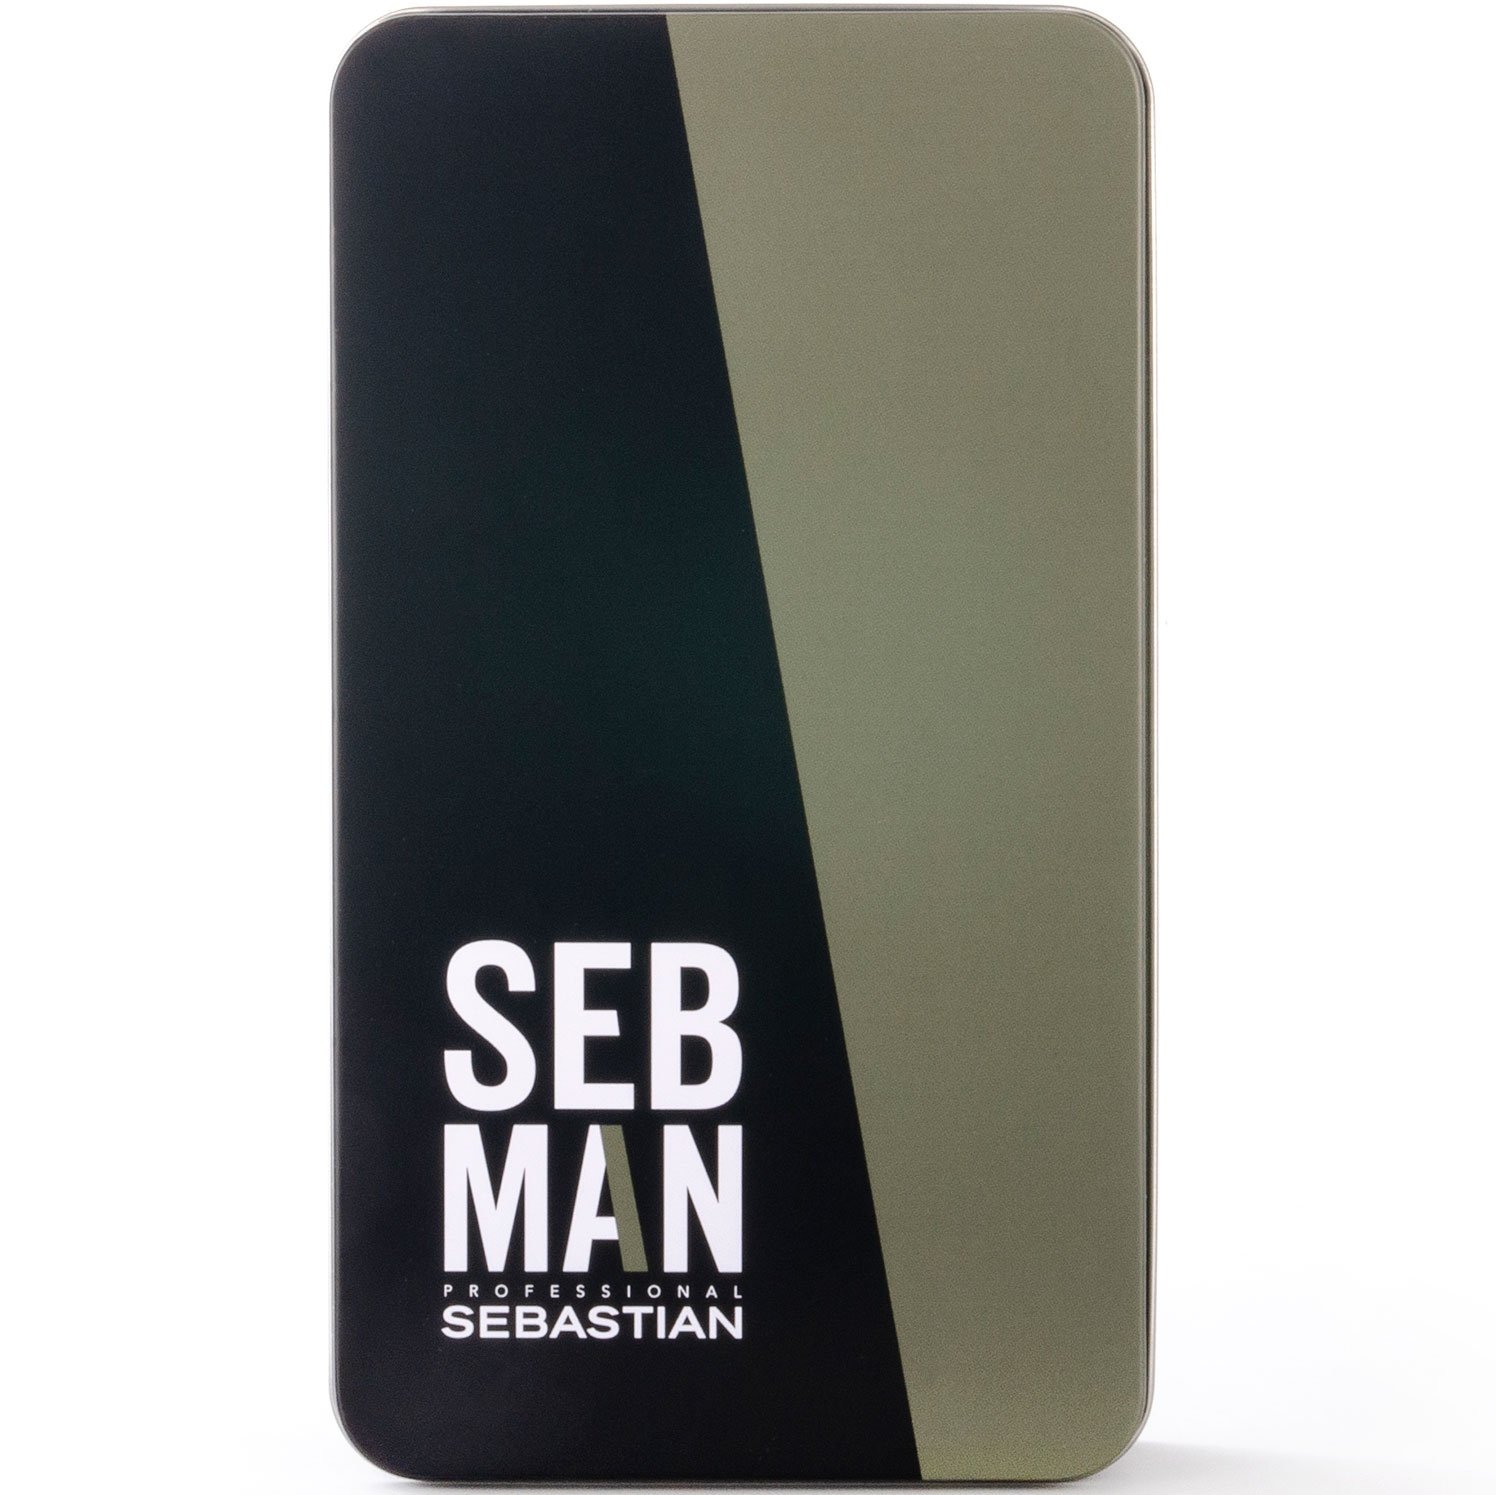 Мужские шампуни:  SEBASTIAN -  Набор подарочный Seb Man Sebastian (Шампунь 3-в-1 250 мл + Увлажняющий бальзам после бритья 150 мл + Расческа)